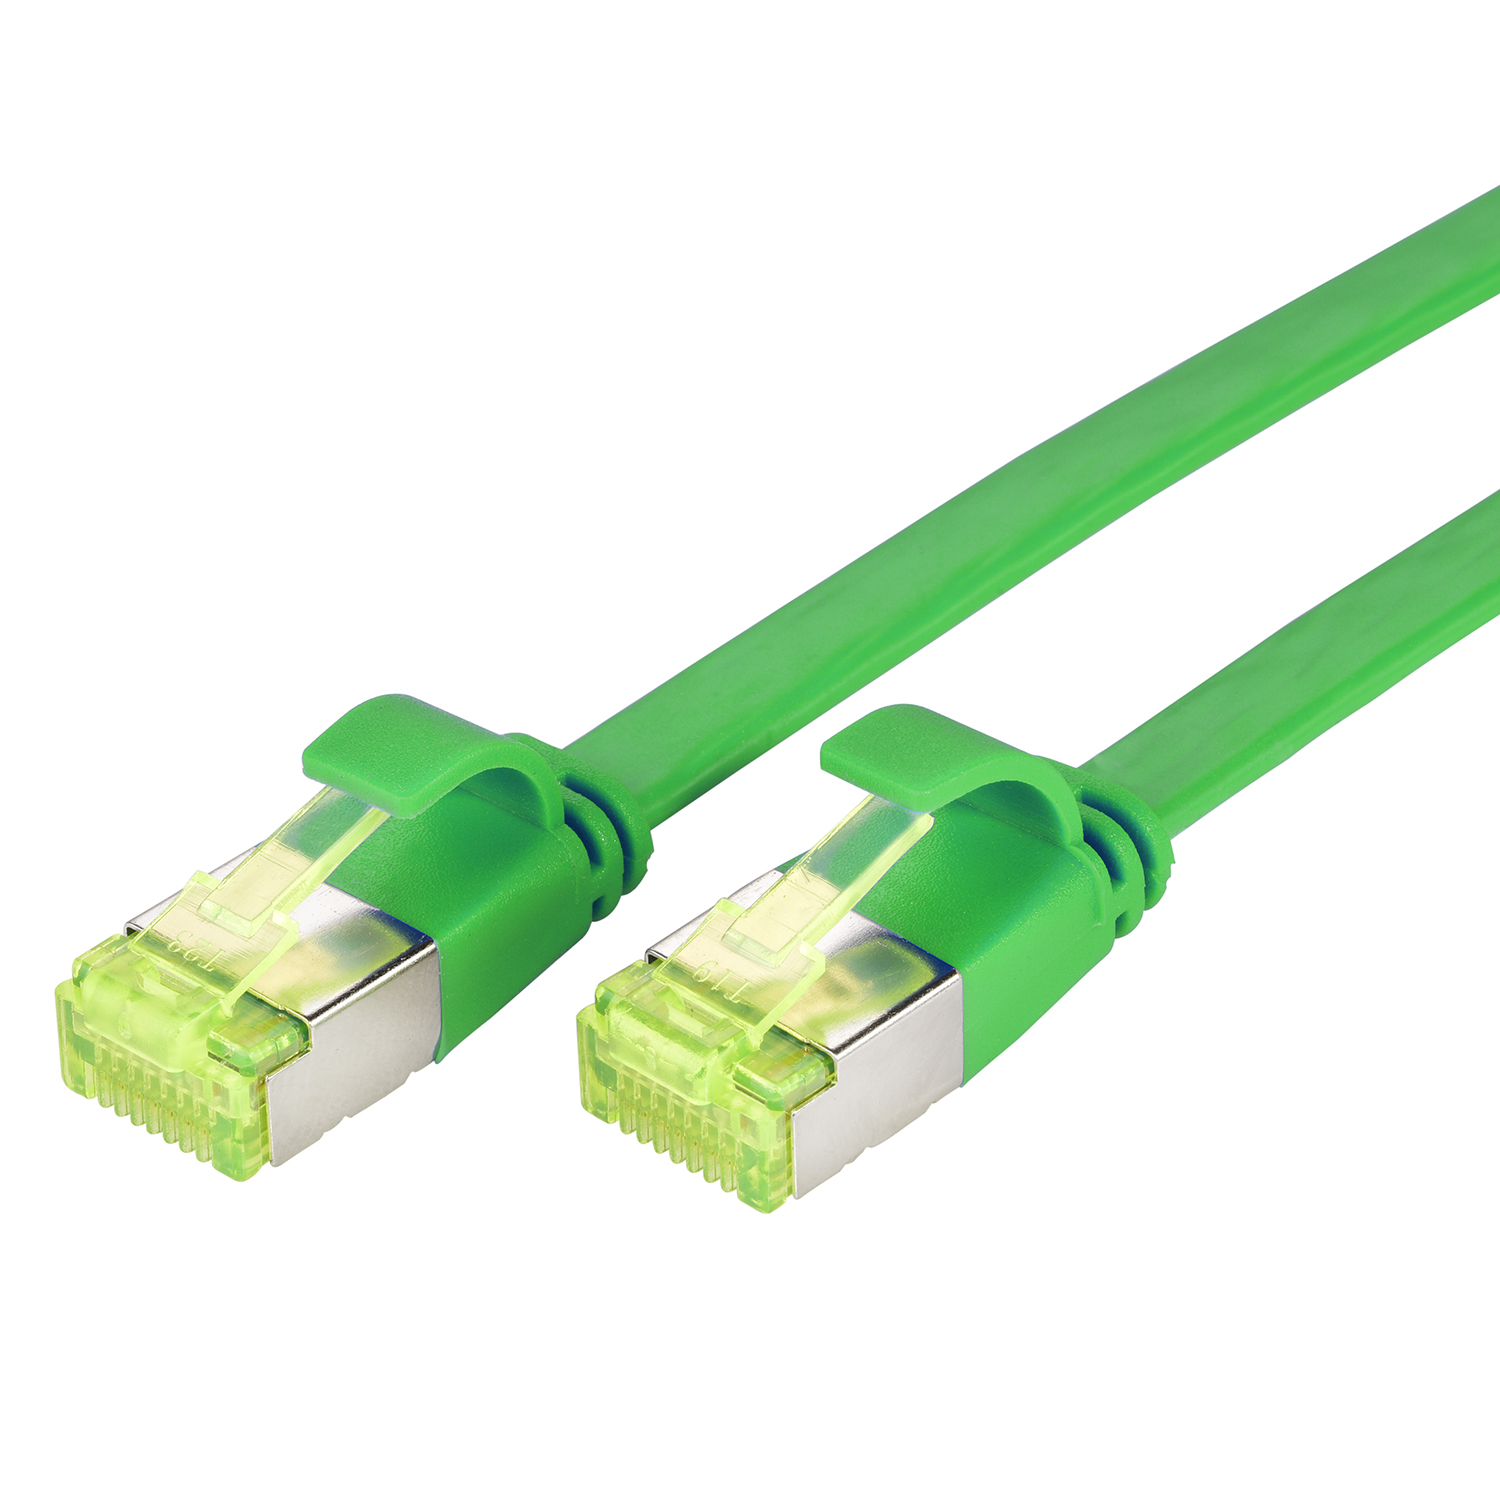 Flachkabel 0,25m grün, Patchkabel U/FTP / m TPFNET 10 GBit, Netzwerkkabel, 0,25